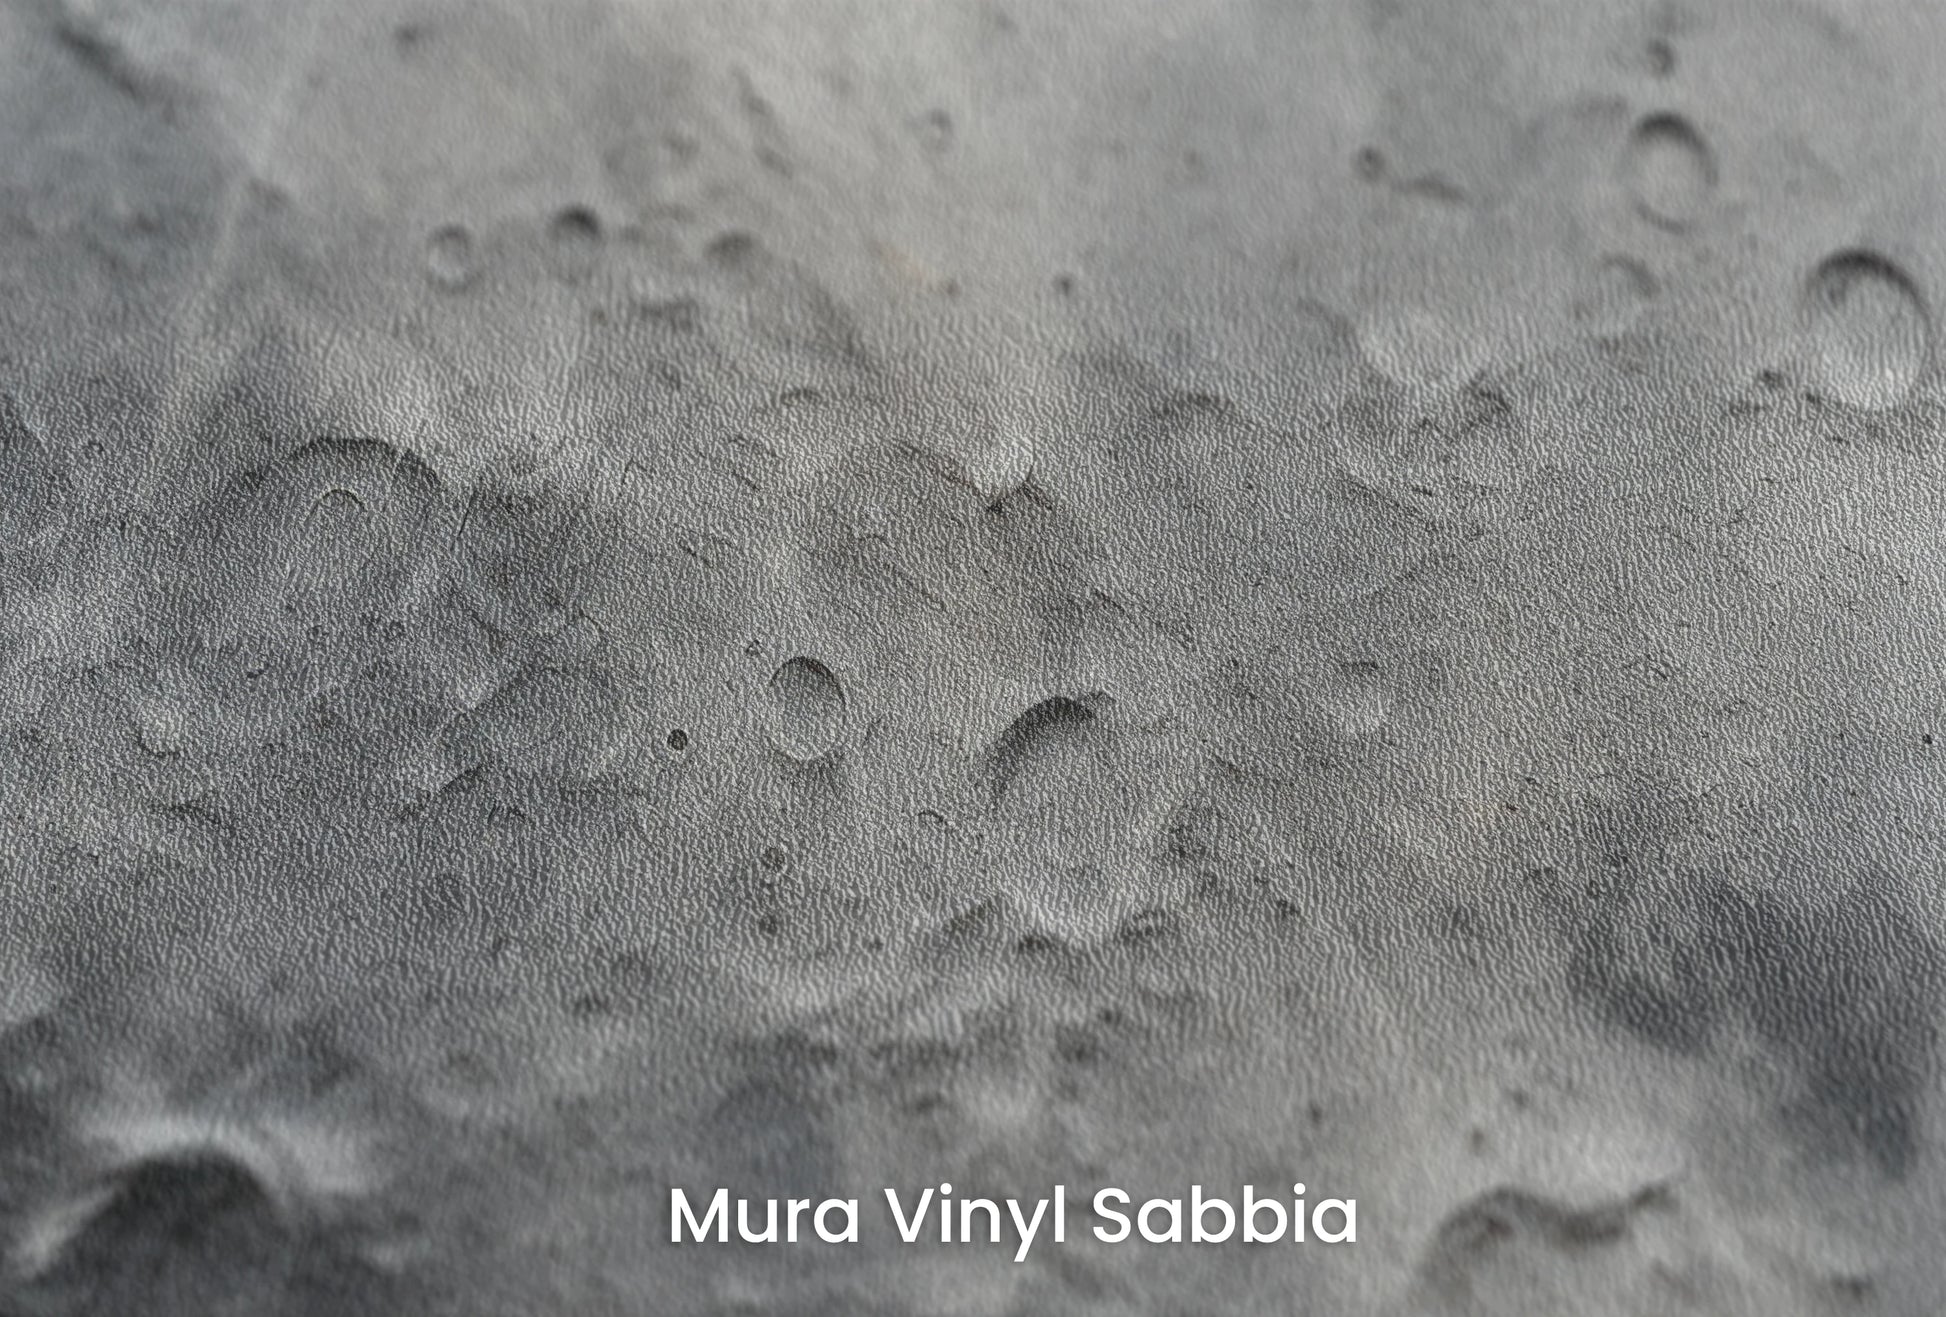 Zbliżenie na artystyczną fototapetę o nazwie Lunar Craters na podłożu Mura Vinyl Sabbia struktura grubego ziarna piasku.